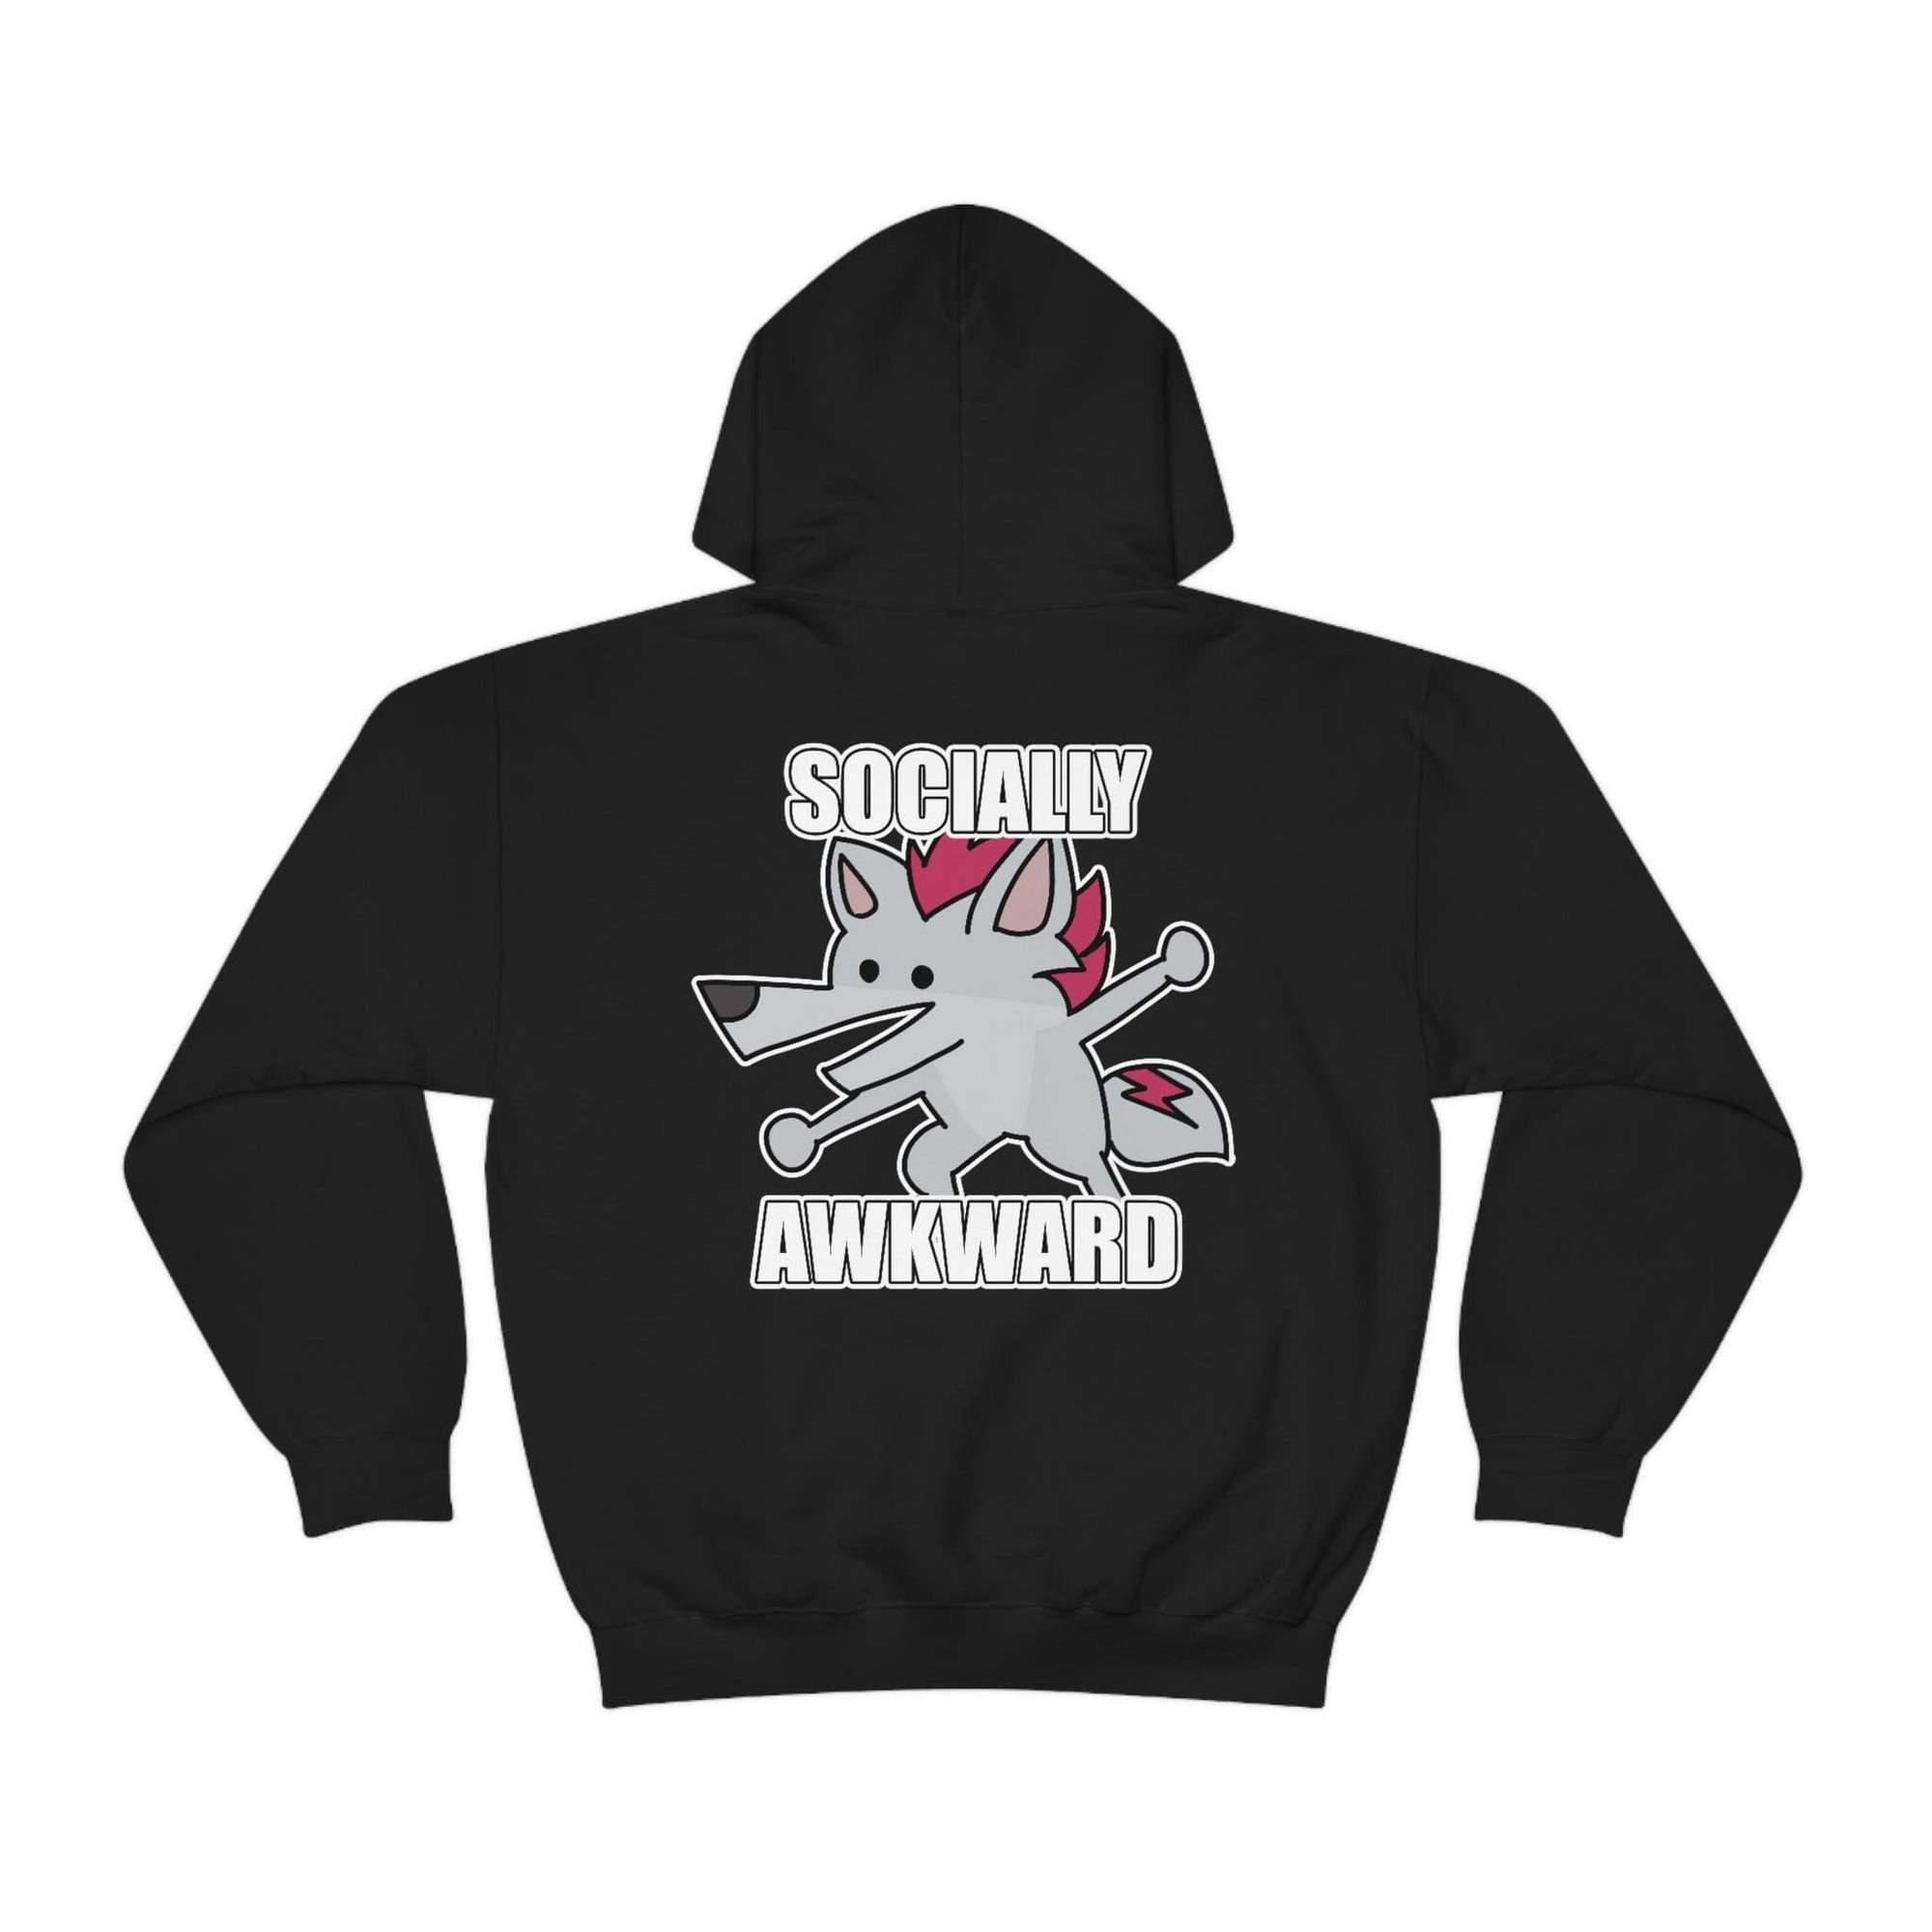 Socially Awkward Shreddyfox - Hoodie Hoodie Shreddyfox Black S 